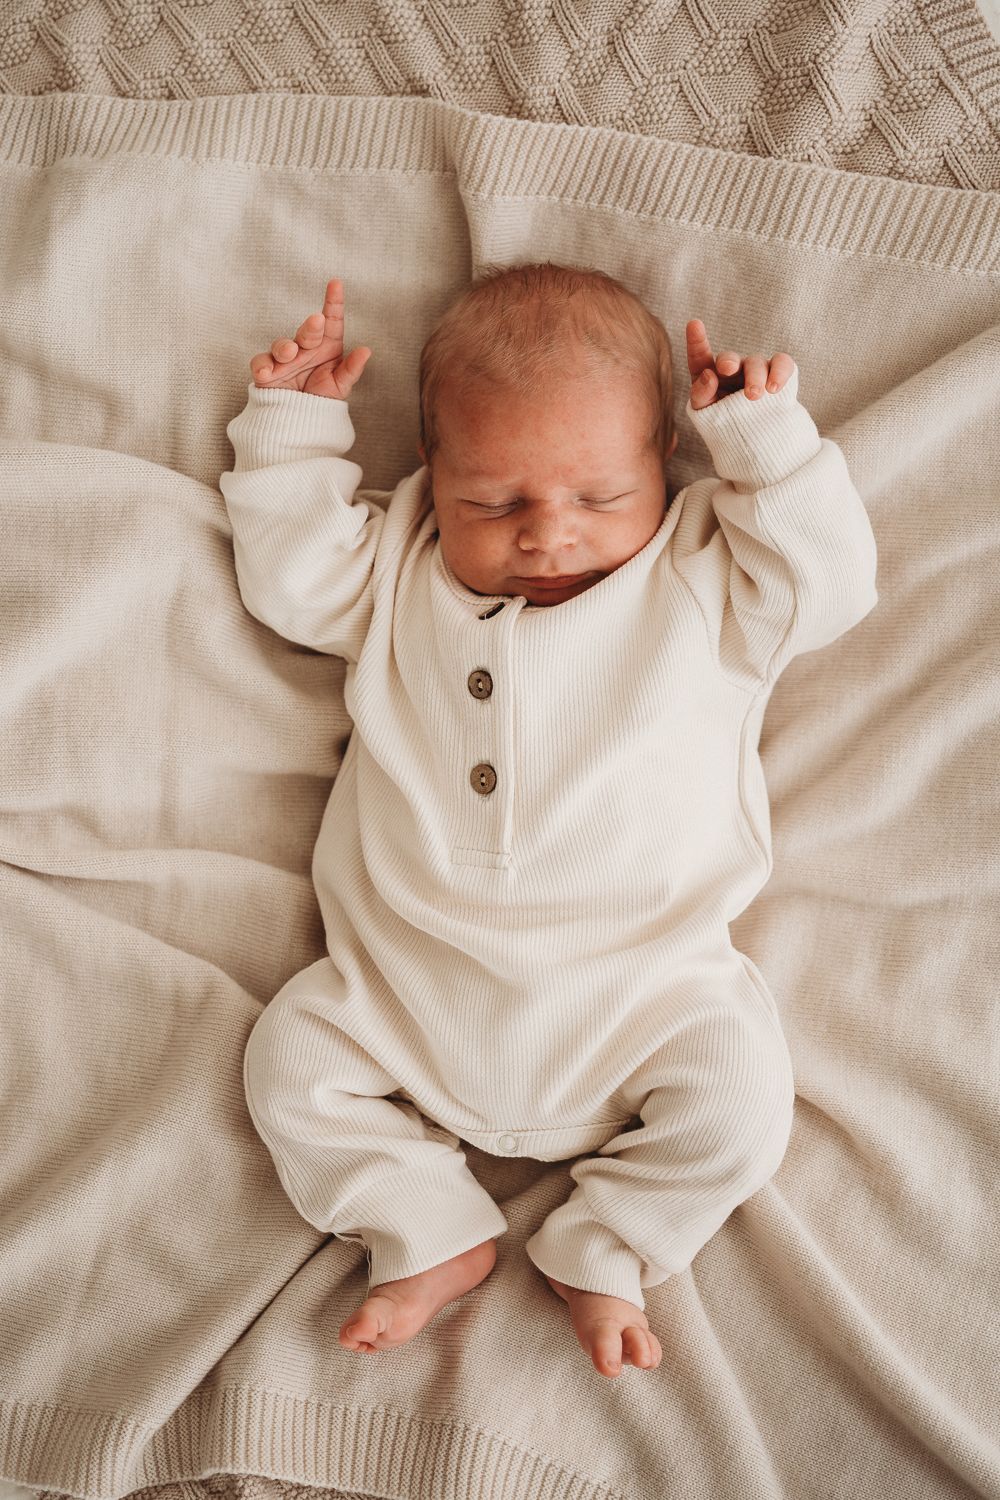 Een zachte pasgeboren baby, gekleed in een gezellig wit onesie en bijpassend Muts Ivory Dreams mutsje van Yumi Baby, ligt diep te slapen op een zacht beige.